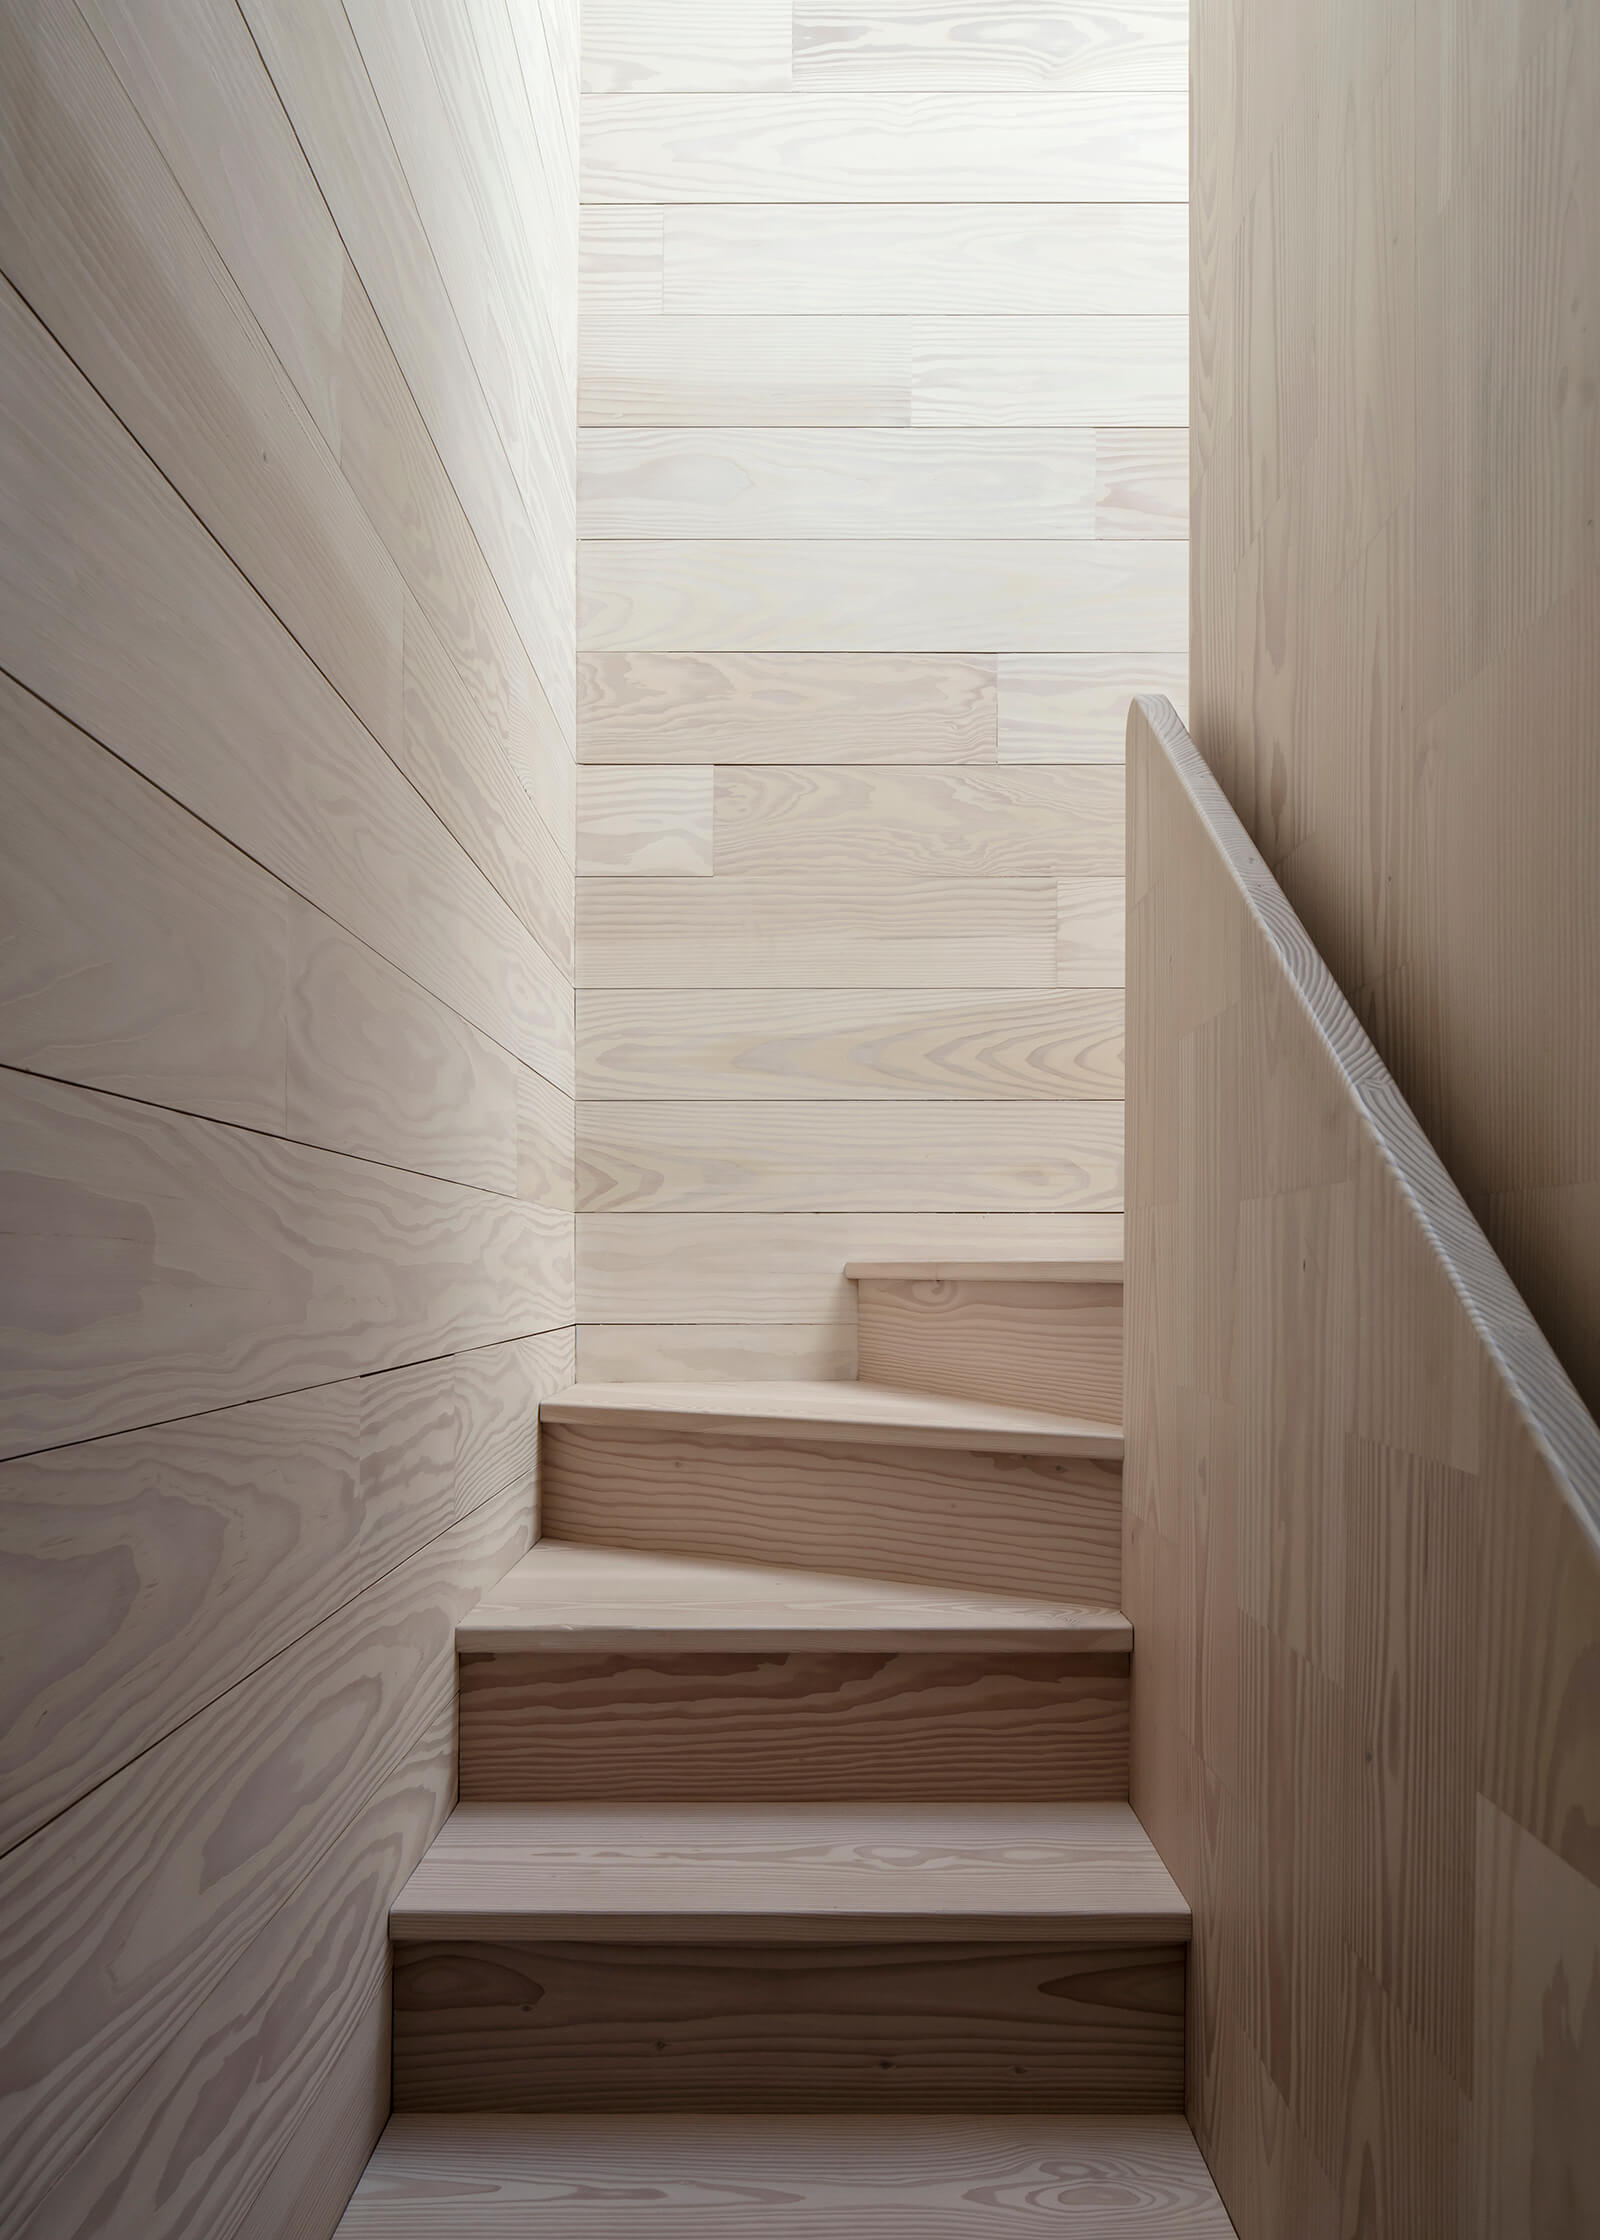 Des finitions en bois chaudes habillent les intérieurs | Saltviga House | Kolman Boye Architects | STIRworld